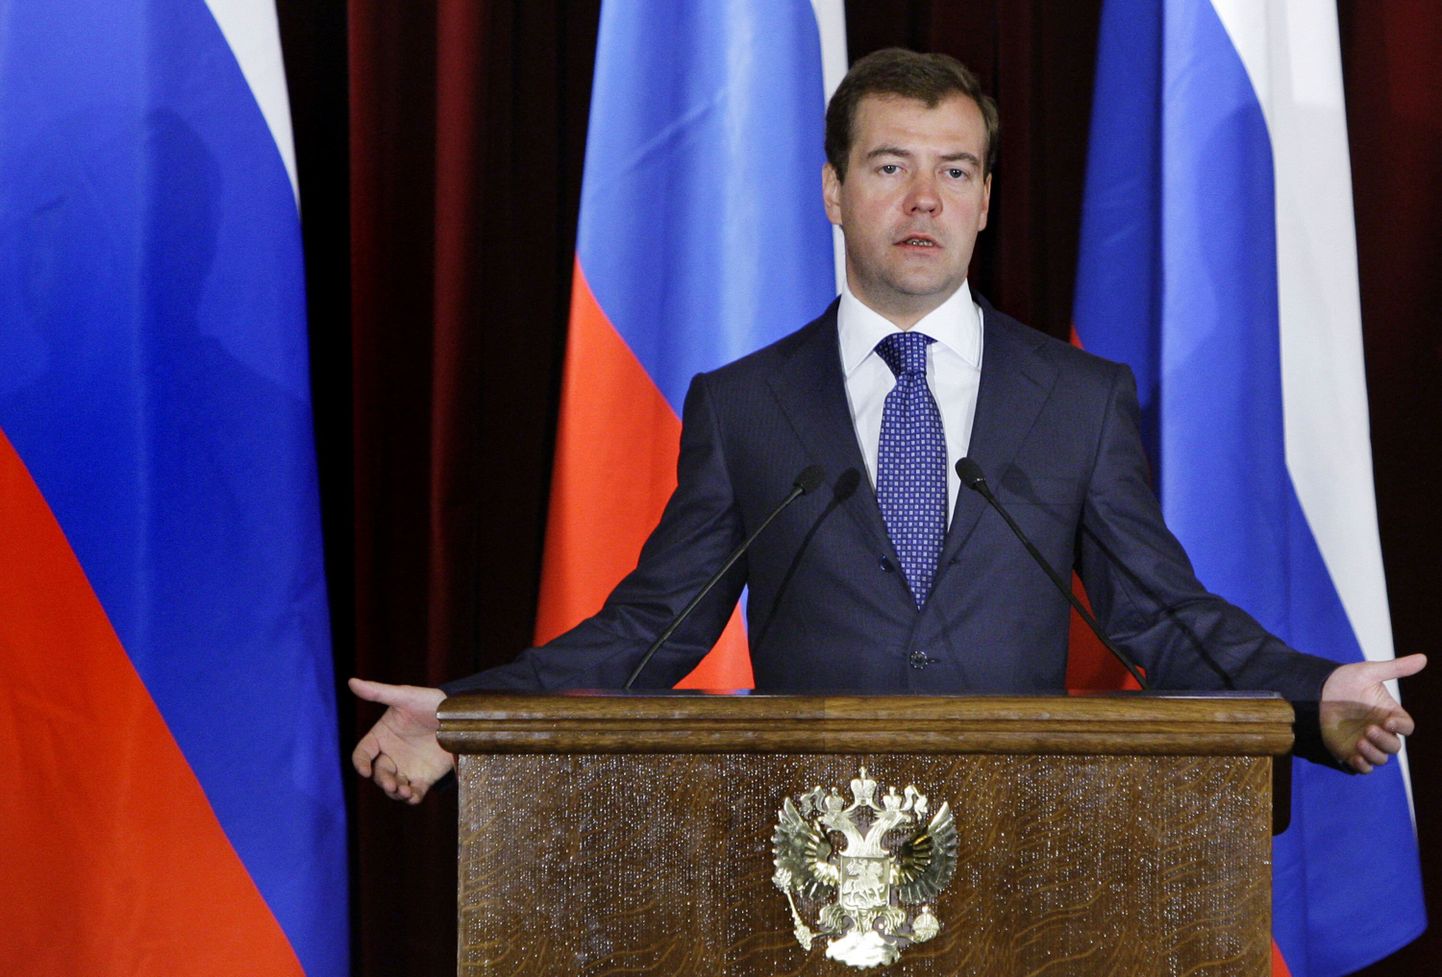 Venemaa president Dmitri Medvedev soovitas diplomaatidel hoiduda otsestest konfrontatsioonidest, kuid arvustas ise taas teravalt lääneriike.